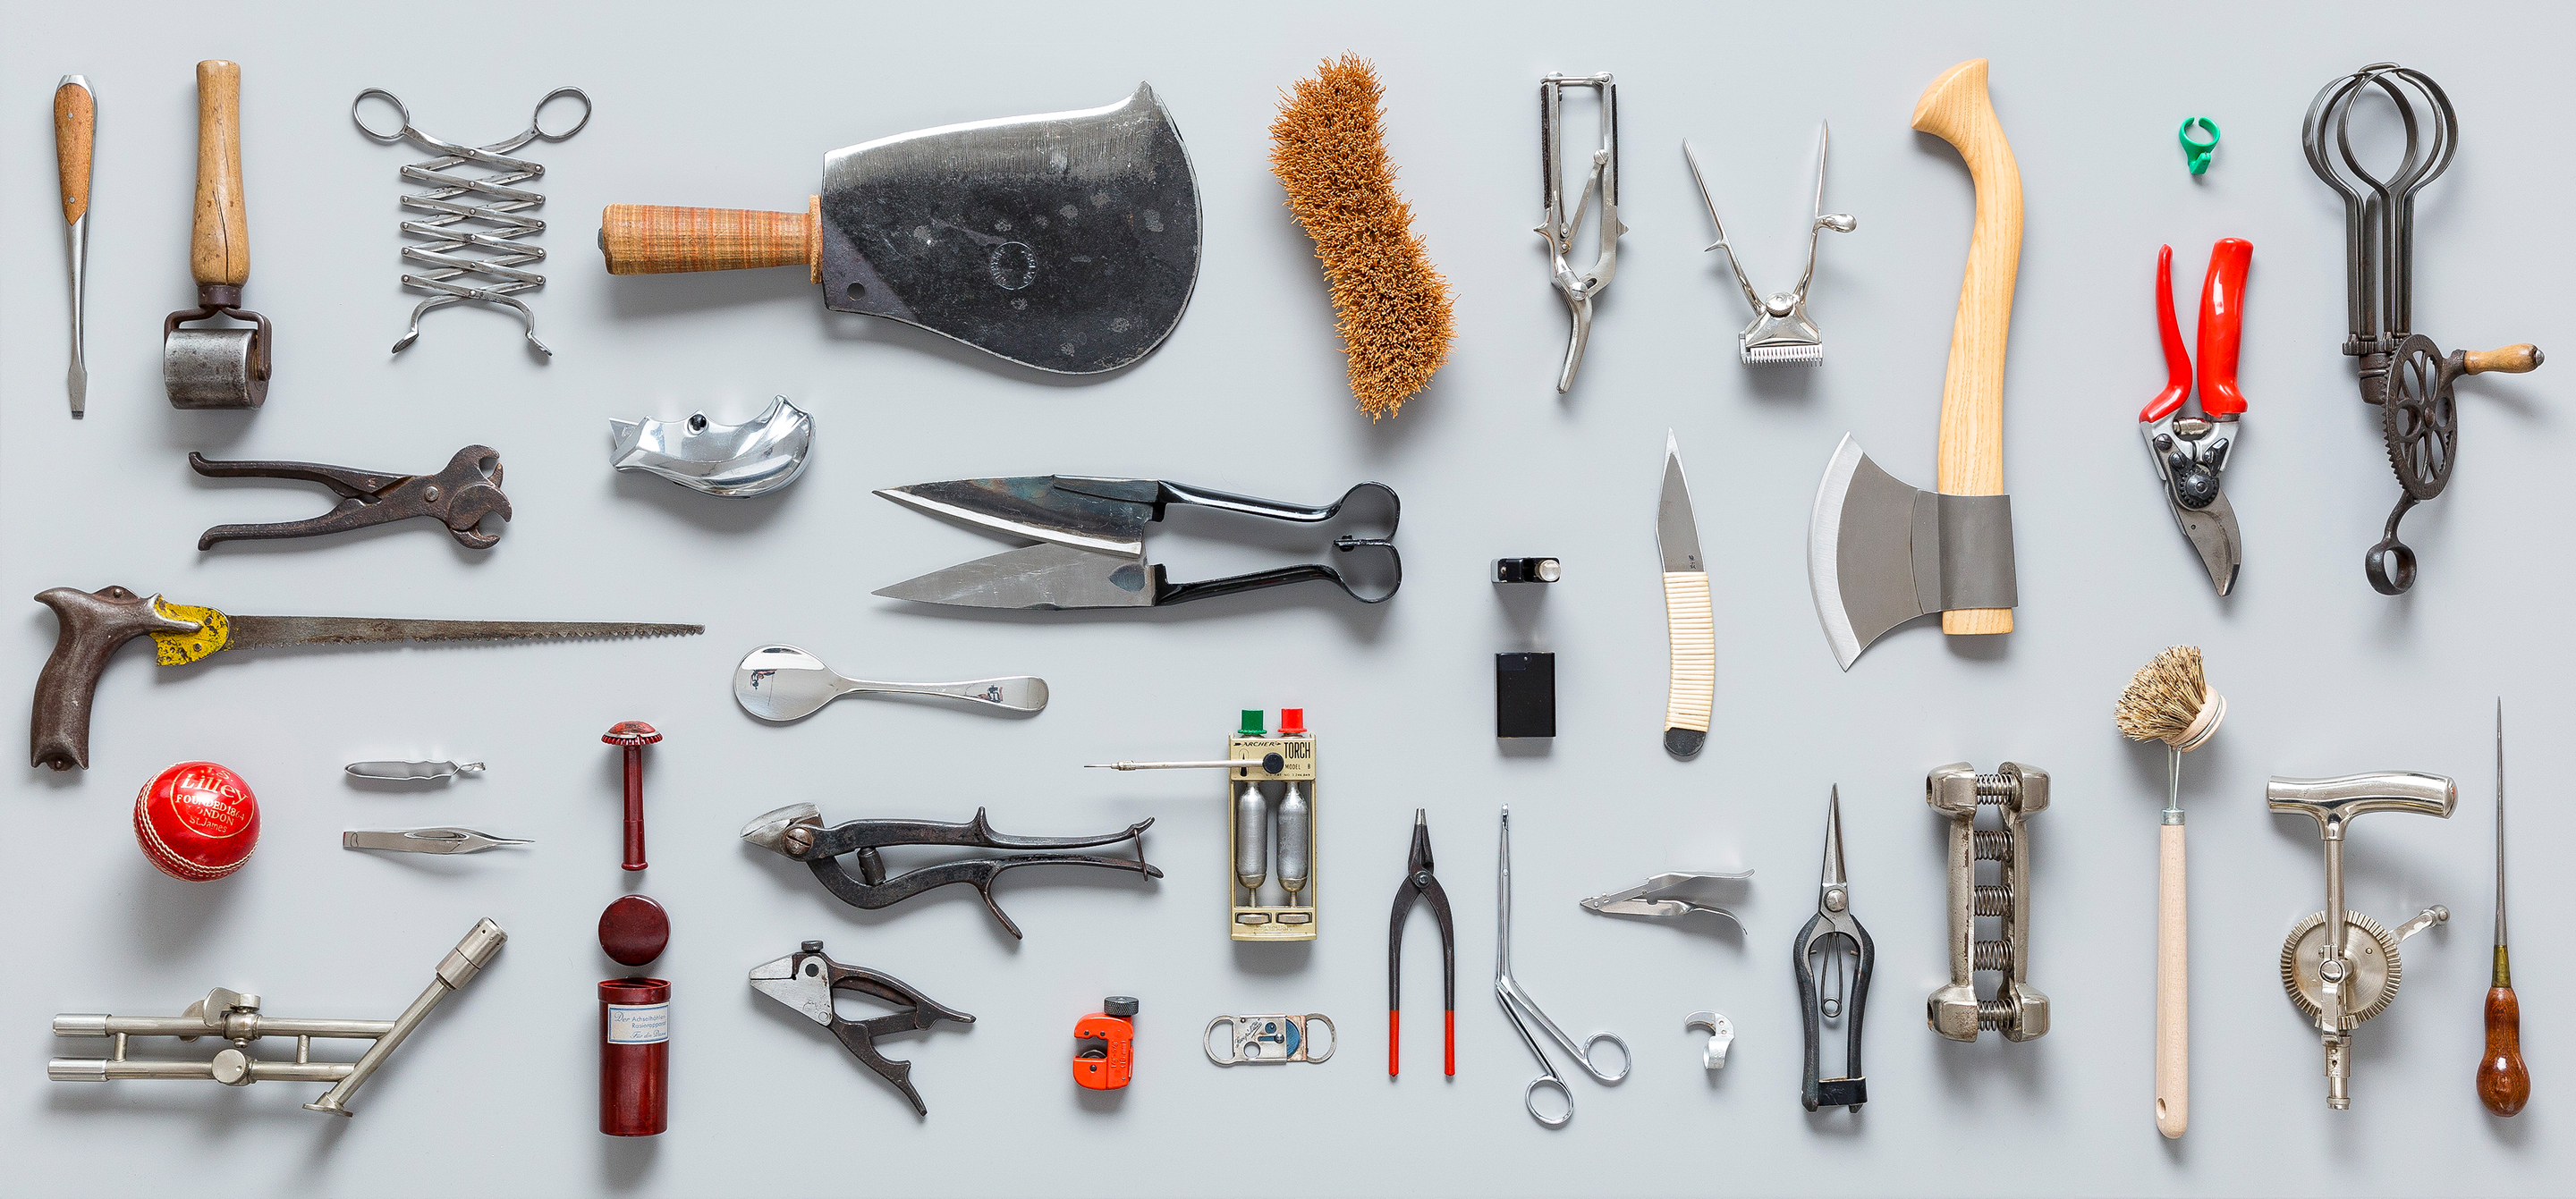 Industrial tools. Строительные инструменты. Рабочие инструменты. Ручной инструмент. Разные инструменты.